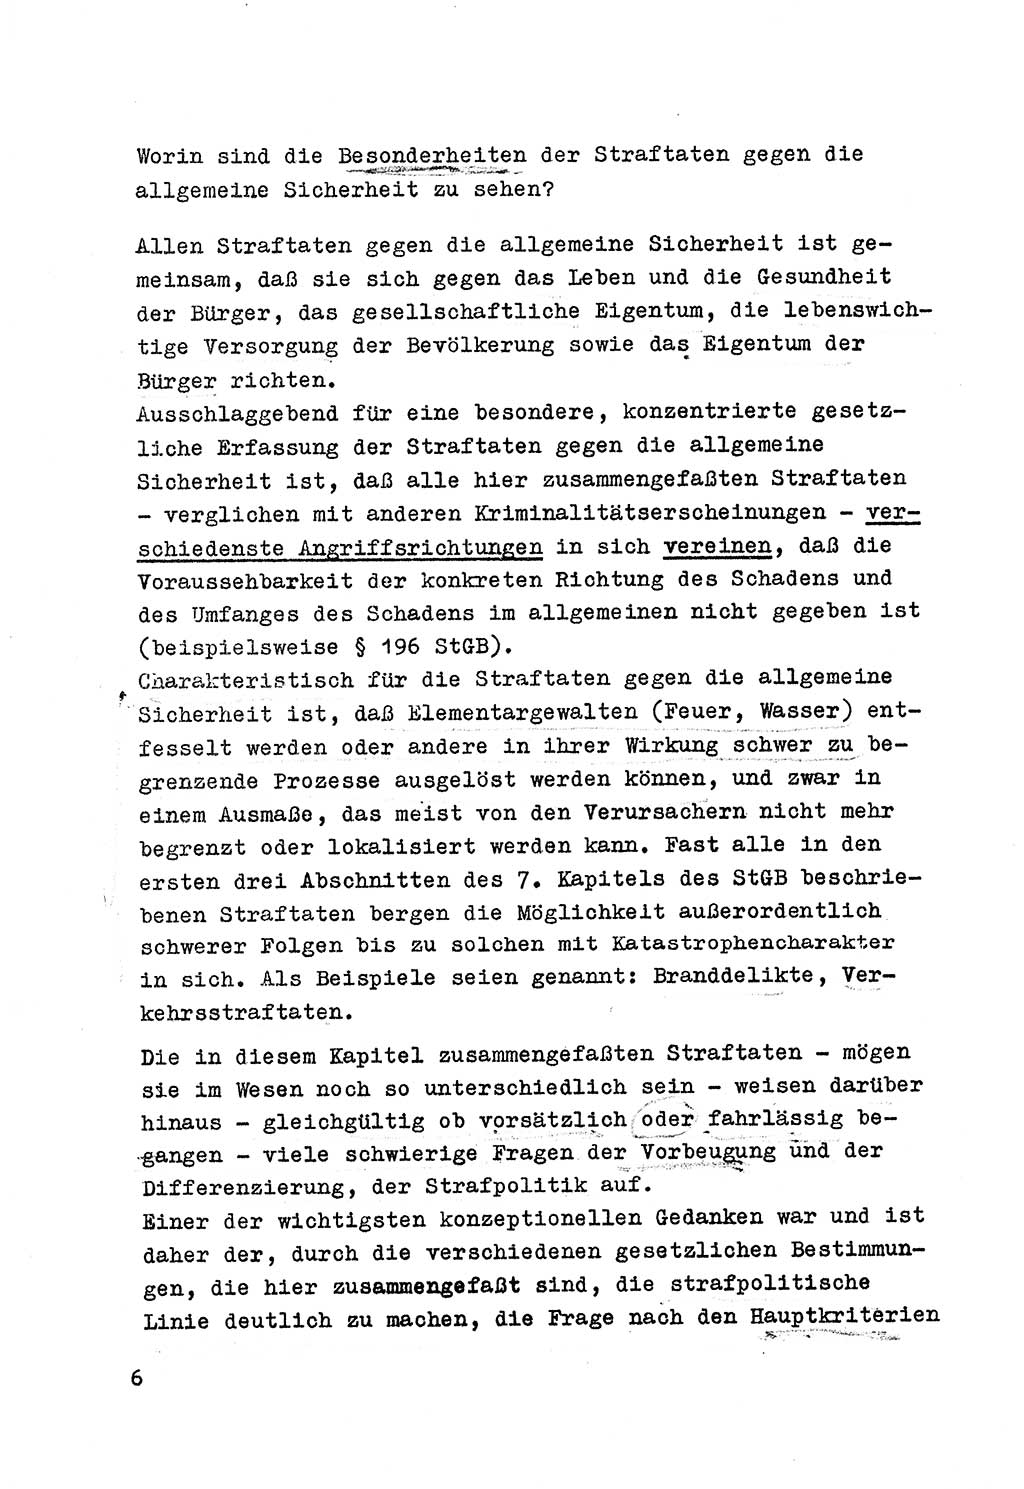 Strafrecht der DDR (Deutsche Demokratische Republik), Besonderer Teil, Lehrmaterial, Heft 7 1970, Seite 6 (Strafr. DDR BT Lehrmat. H. 7 1970, S. 6)